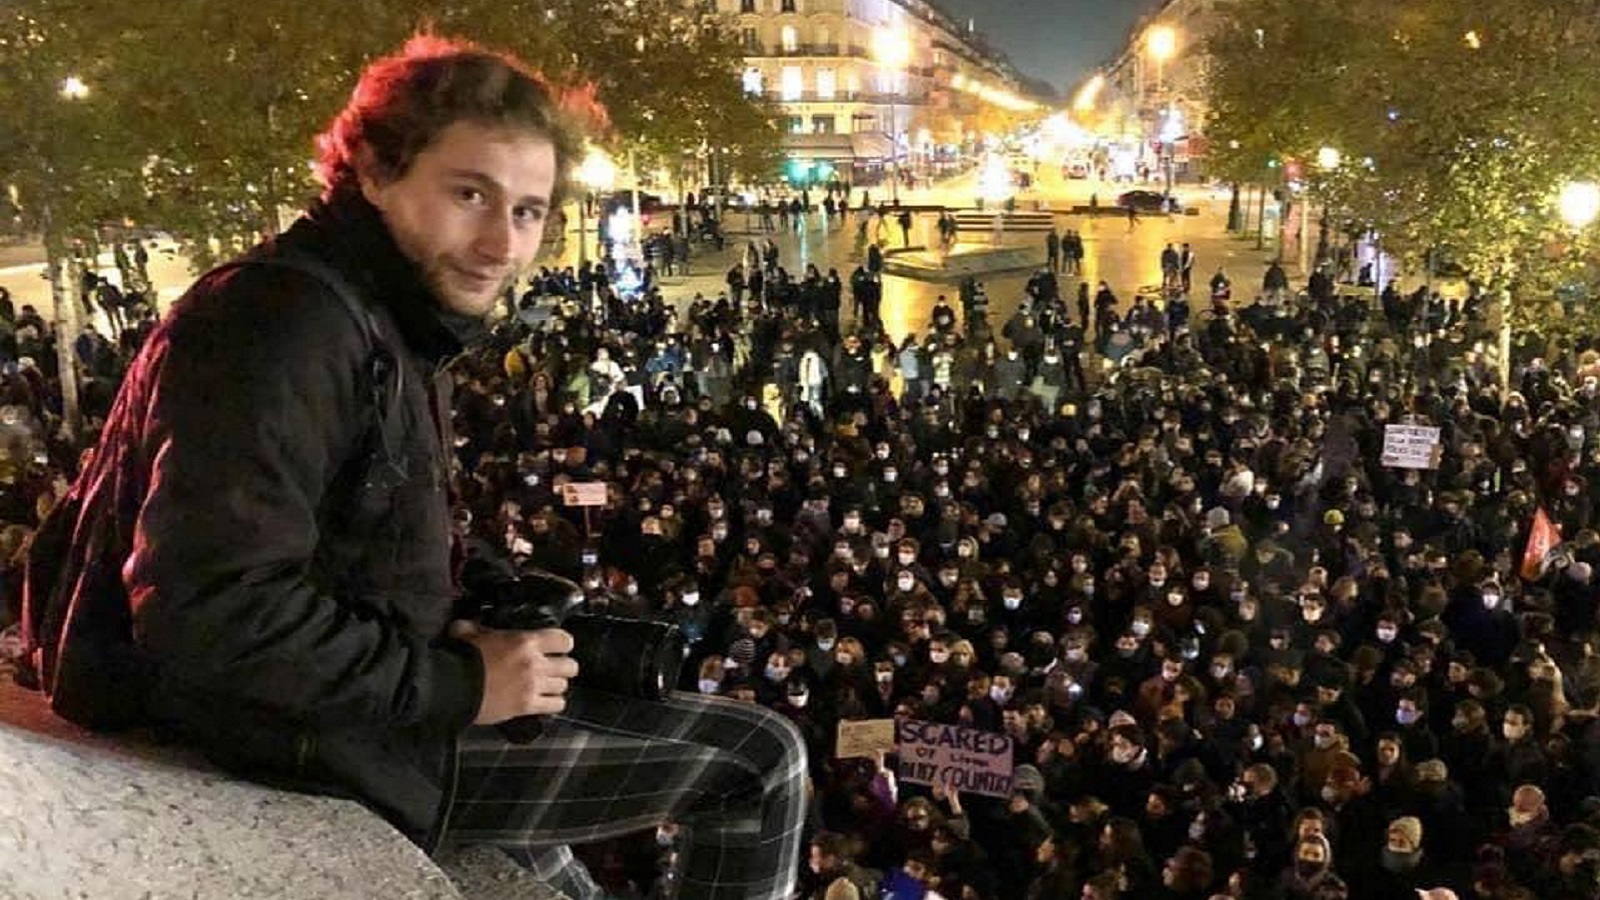 الشرطة الفرنسية تضرب صاحب "جائزة الصورة الصحافية"..أمير الحلبي